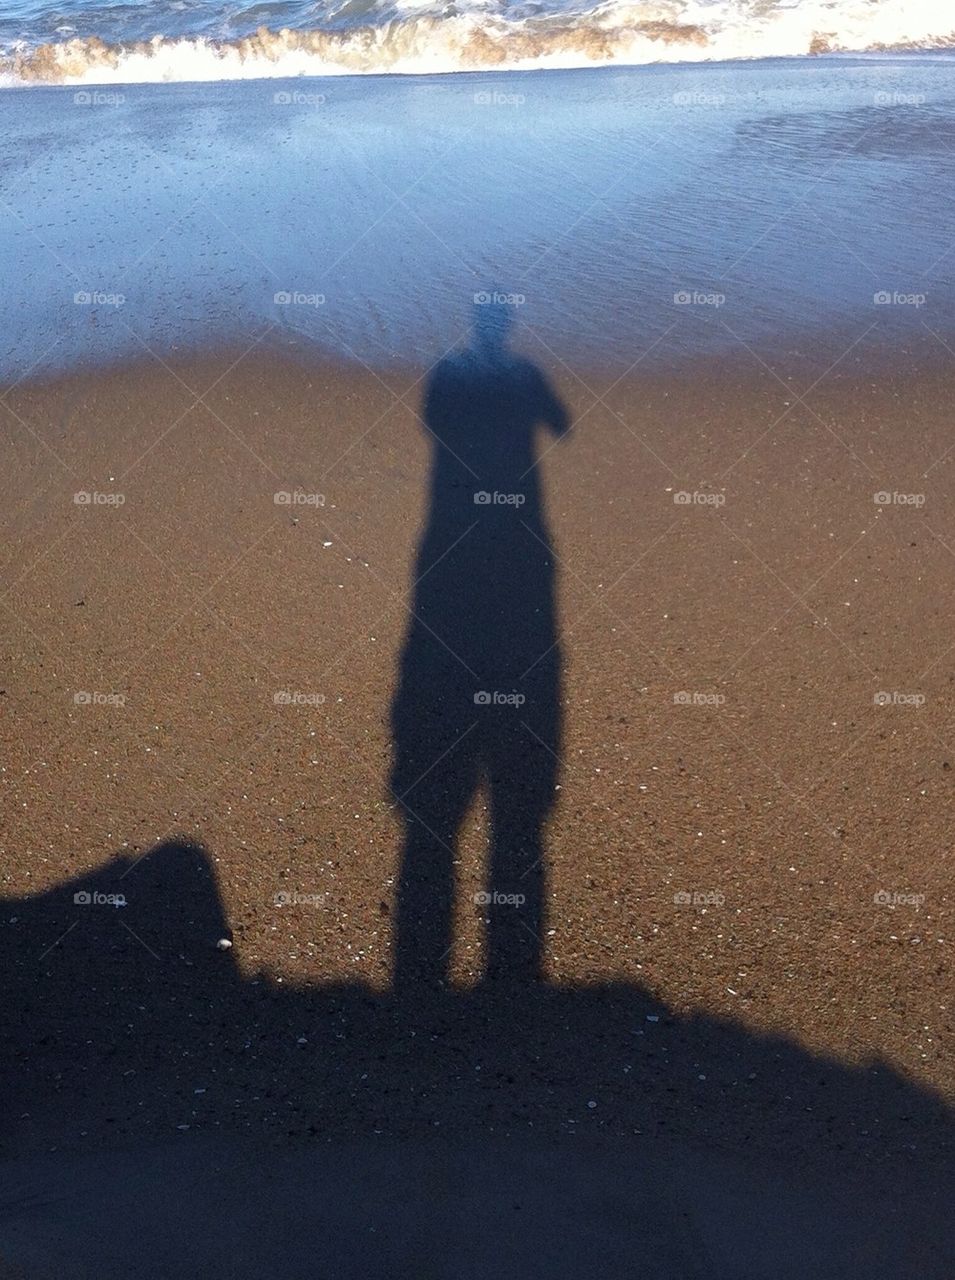 Shadow on the beach 7